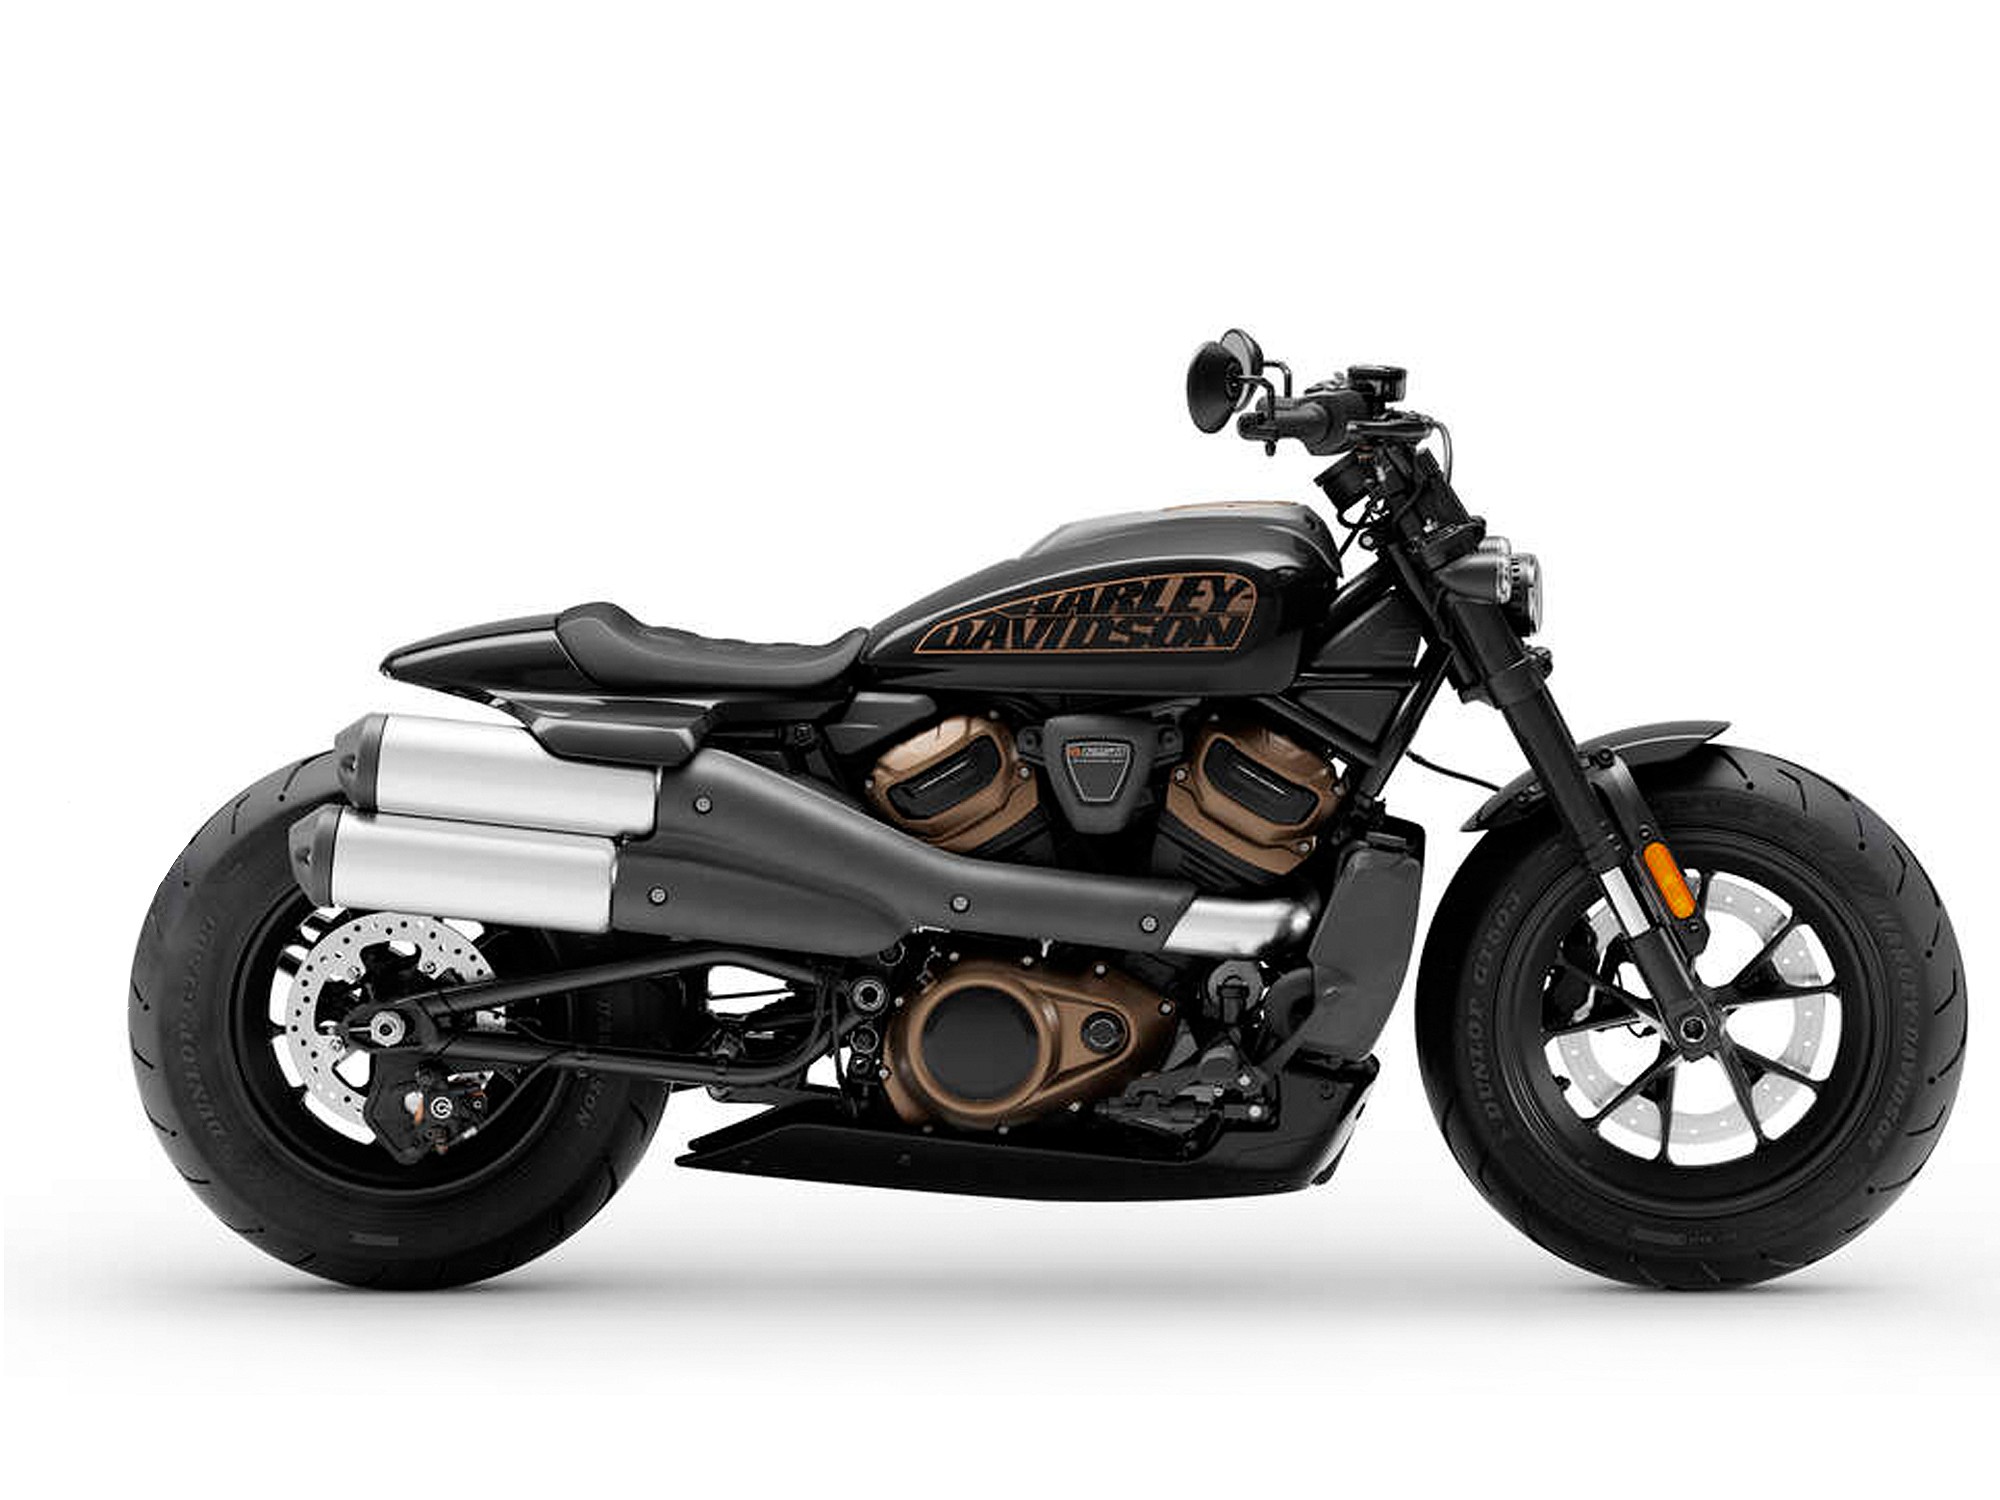 Wunderkind Parts & Accessories for Harley Davidson Models